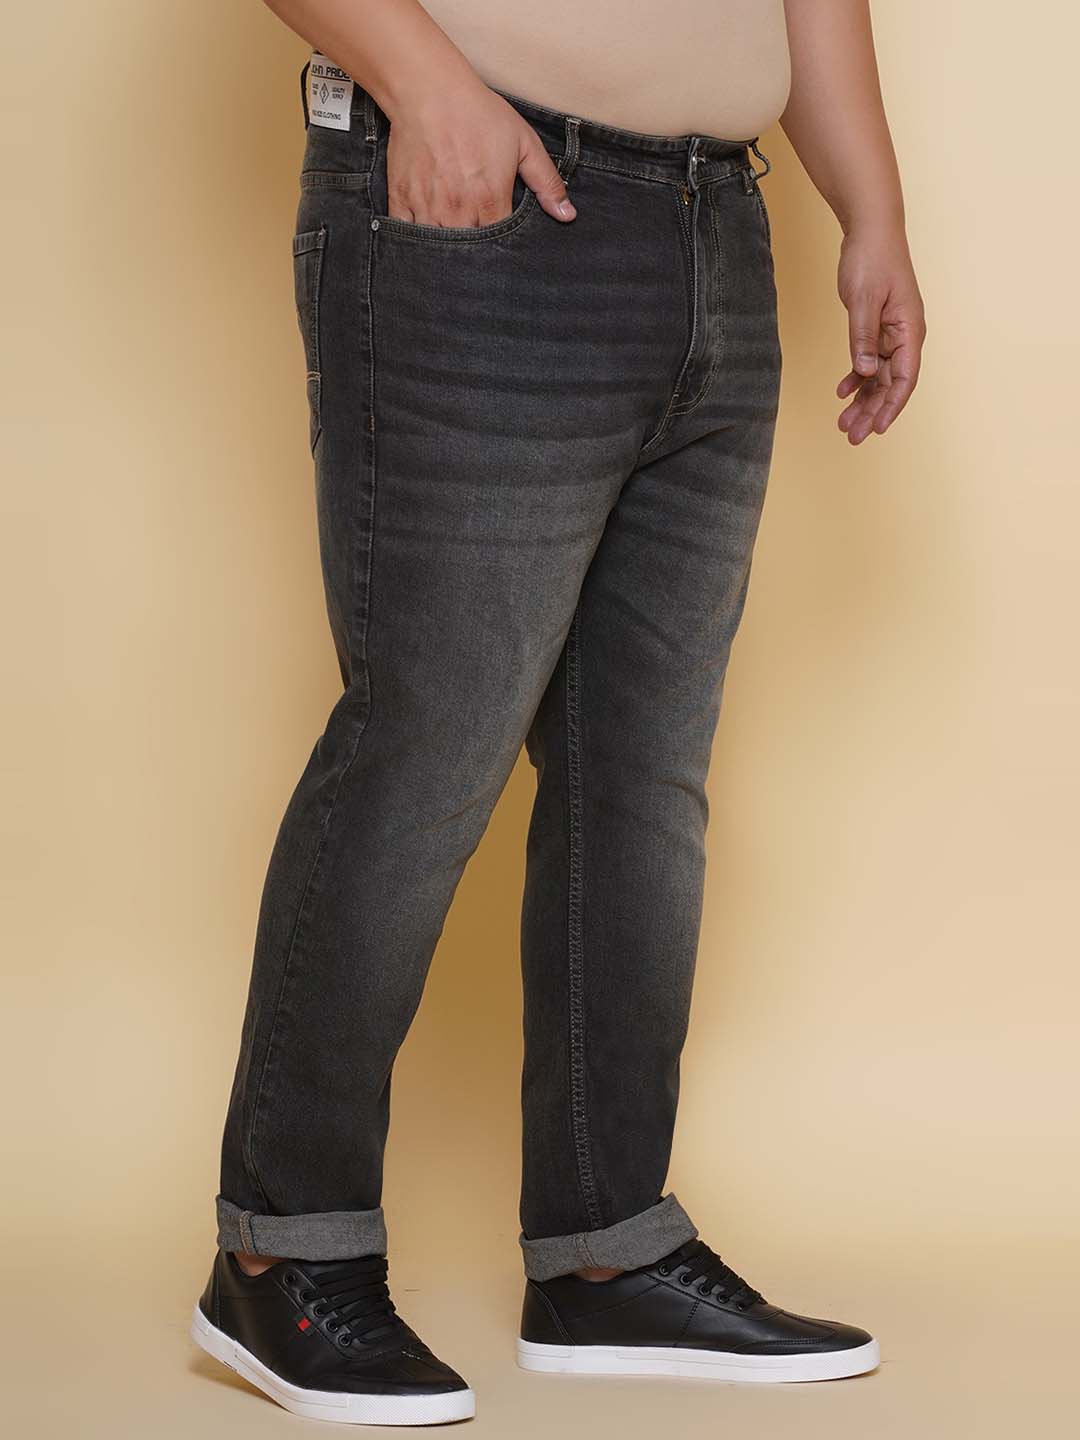 bottomwear/jeans/EJPJ25135/ejpj25135-3.jpg